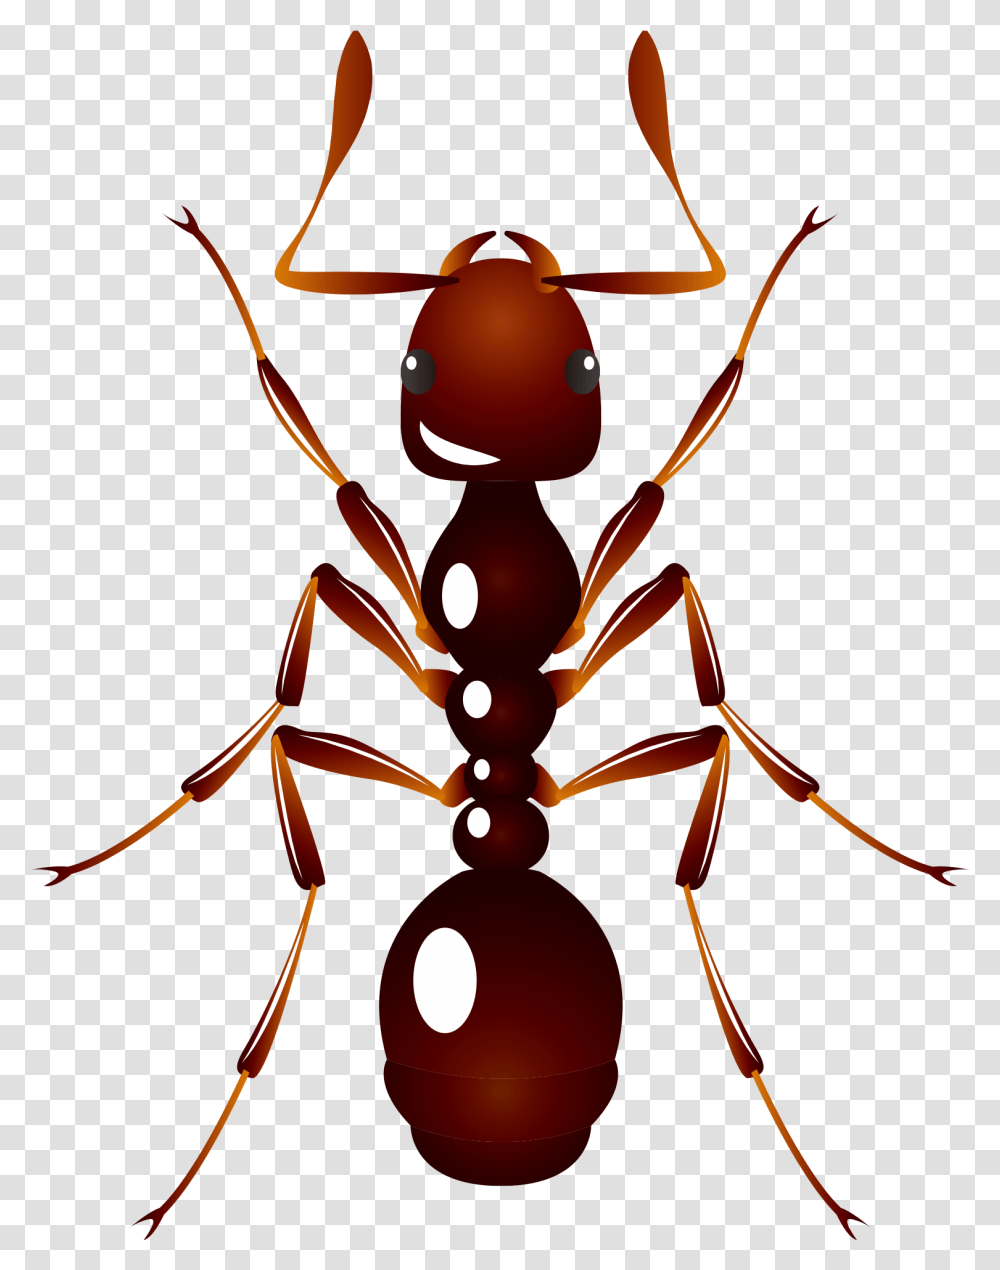 Ant U6606u866b U8682u8681 Insect Ant, Invertebrate, Animal, Lamp Transparent Png